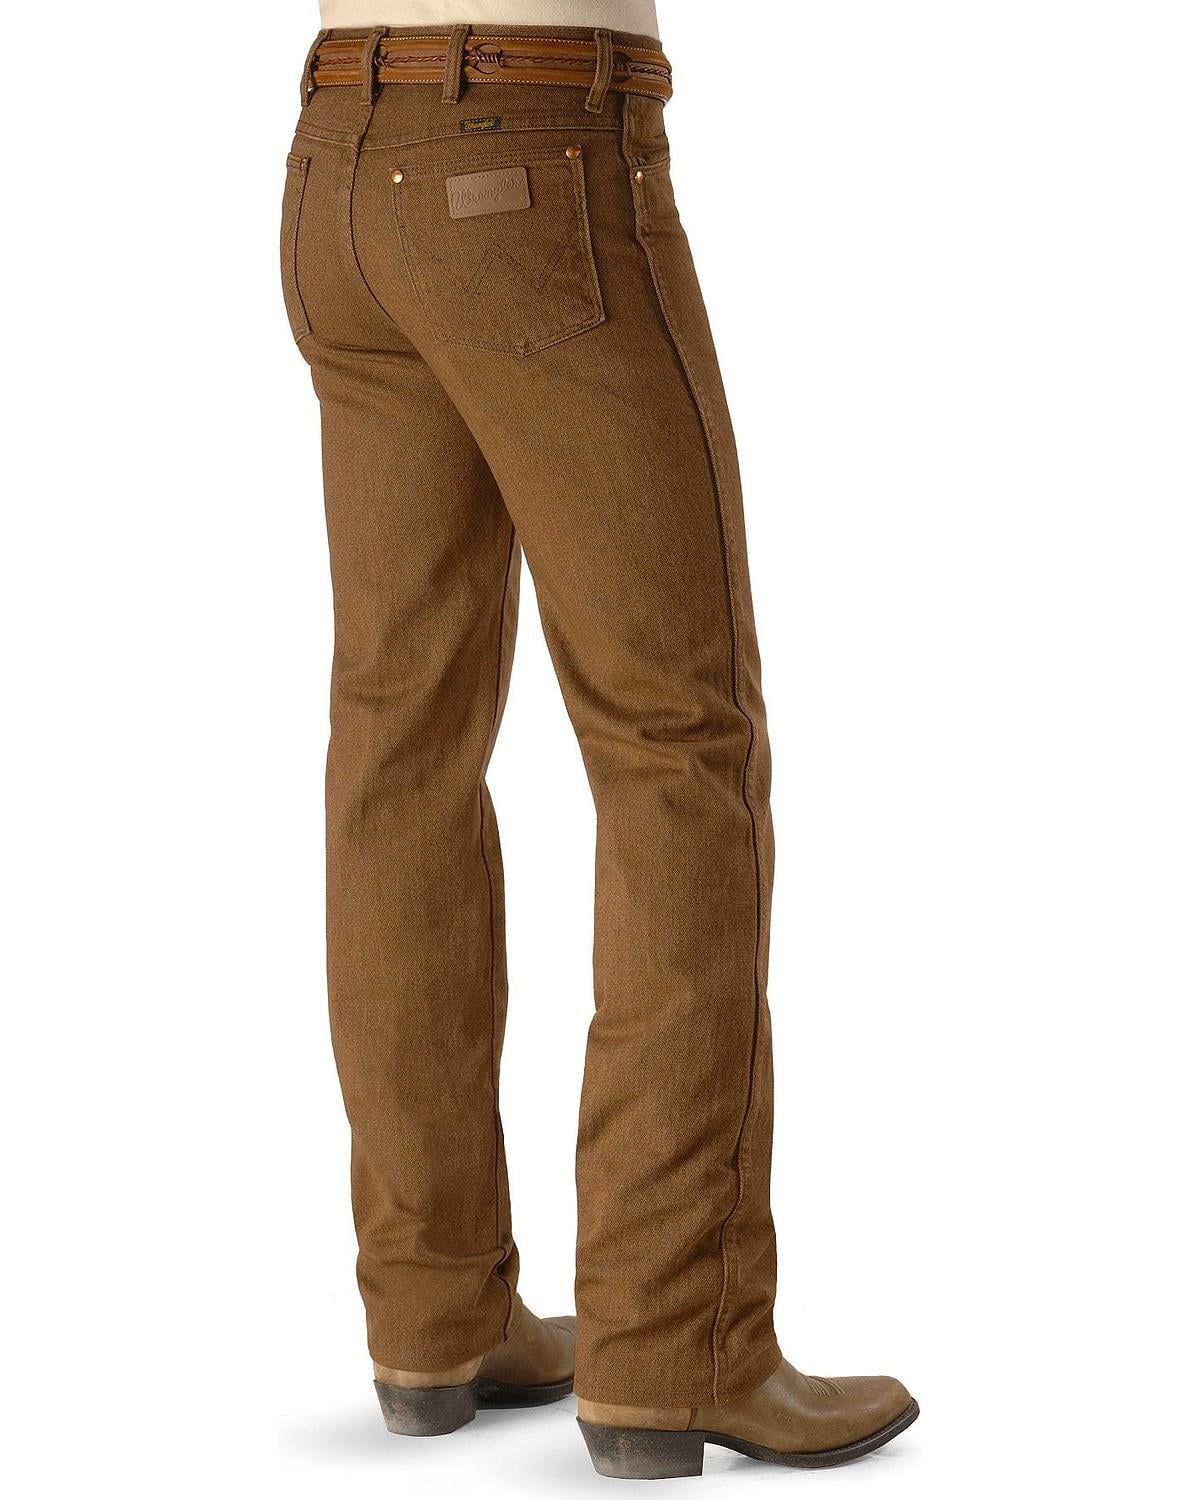 Wrangler - wrangler men's jeans 936 slim fit prewashed colors ...